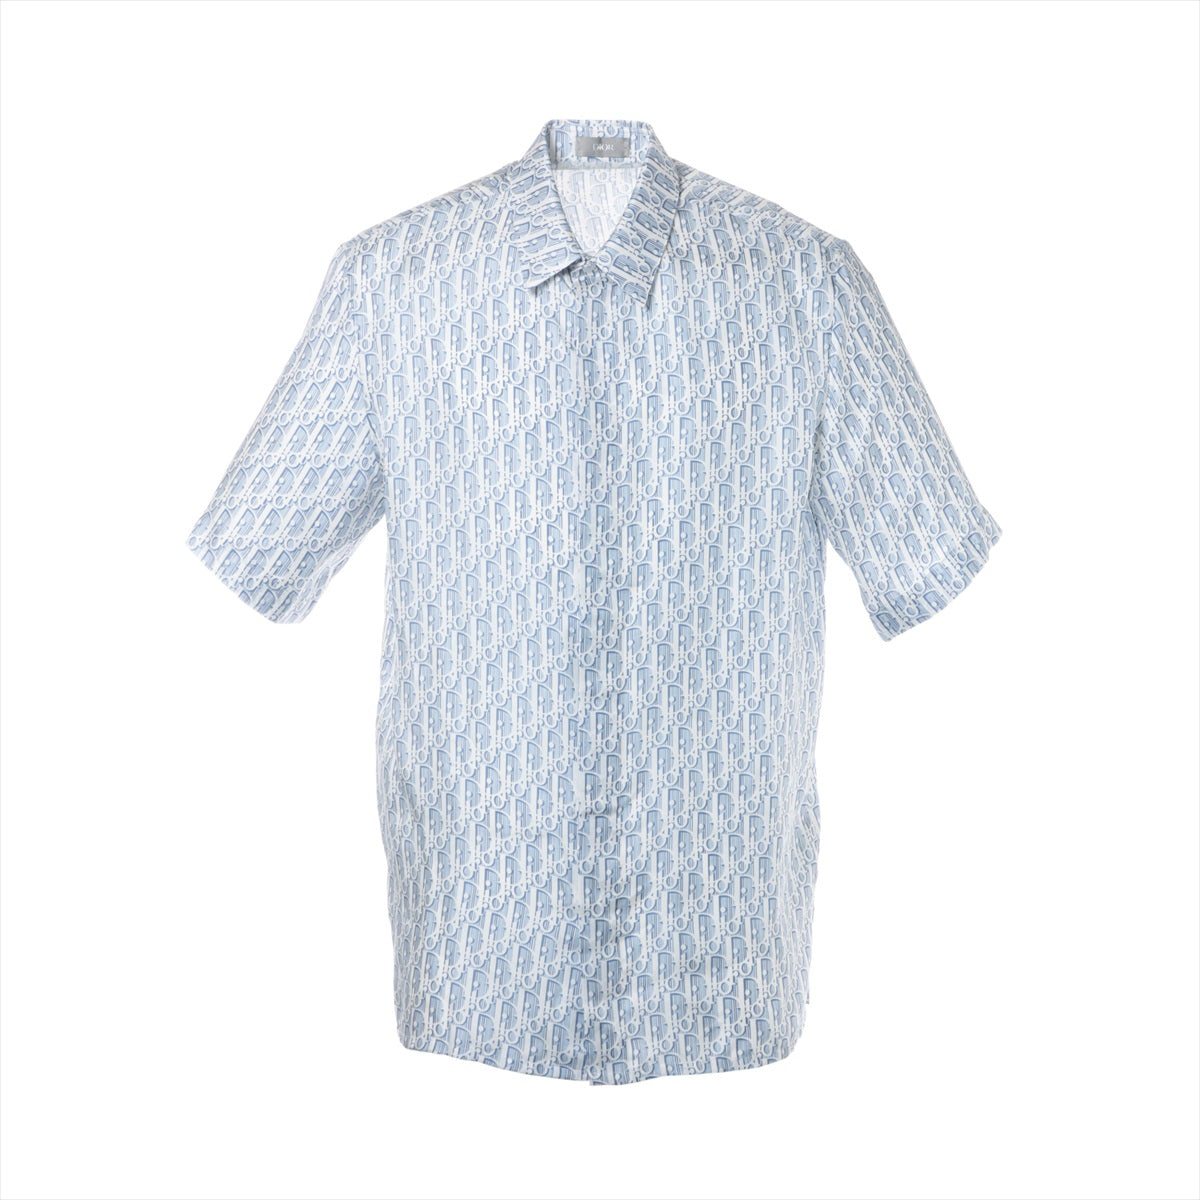 ディオール オブリーク シルク シャツ 39 メンズ ブルー×ホワイト 